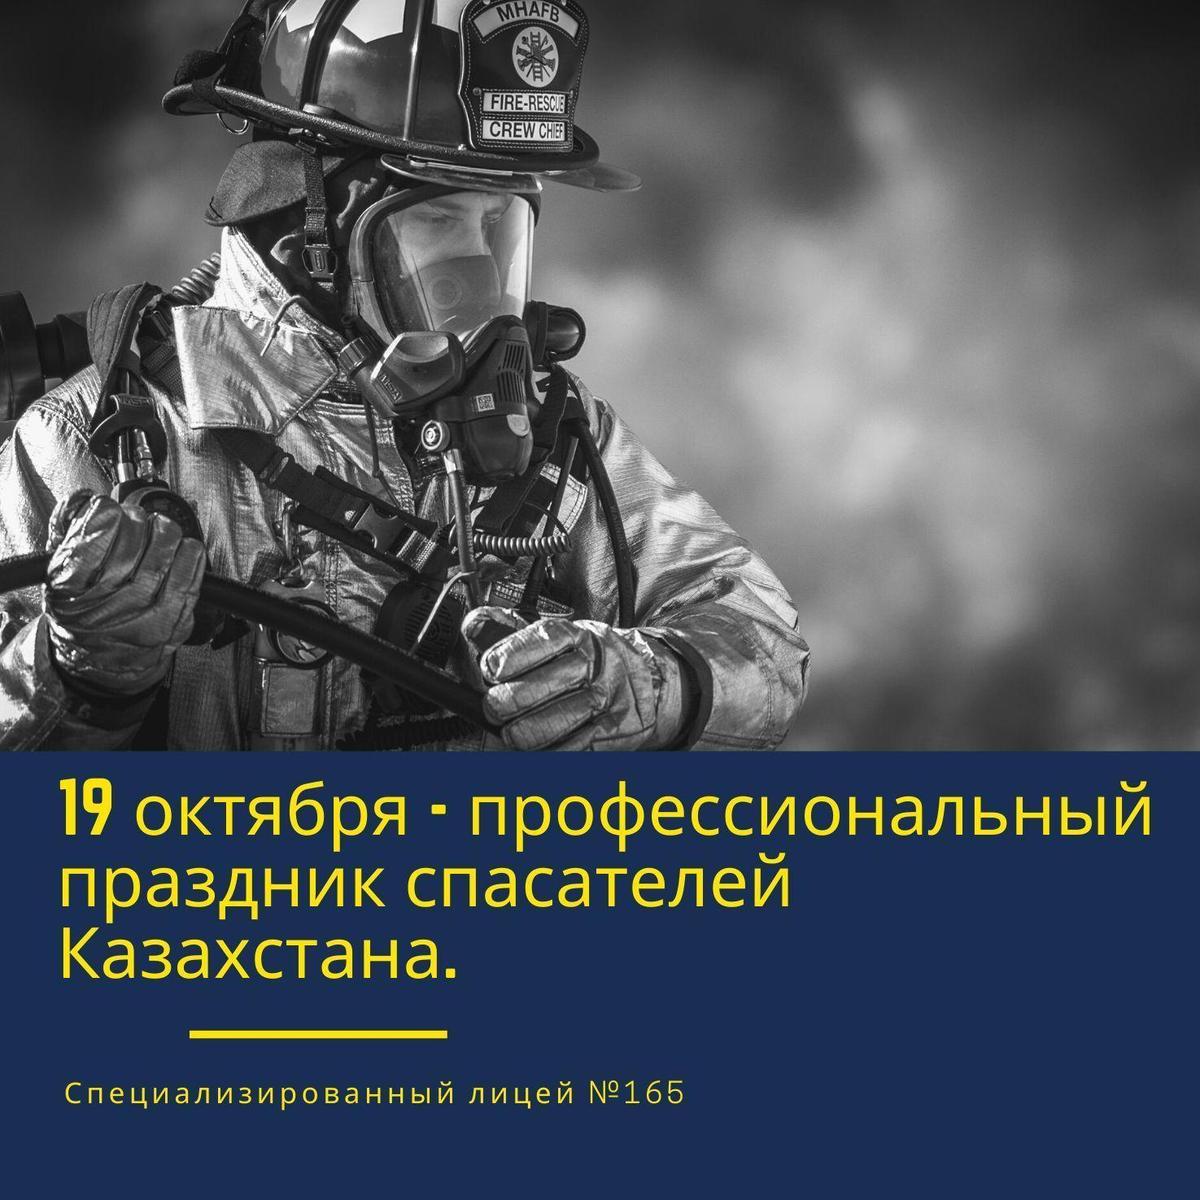 День спасателя отмечают в Казахстане 19 октября